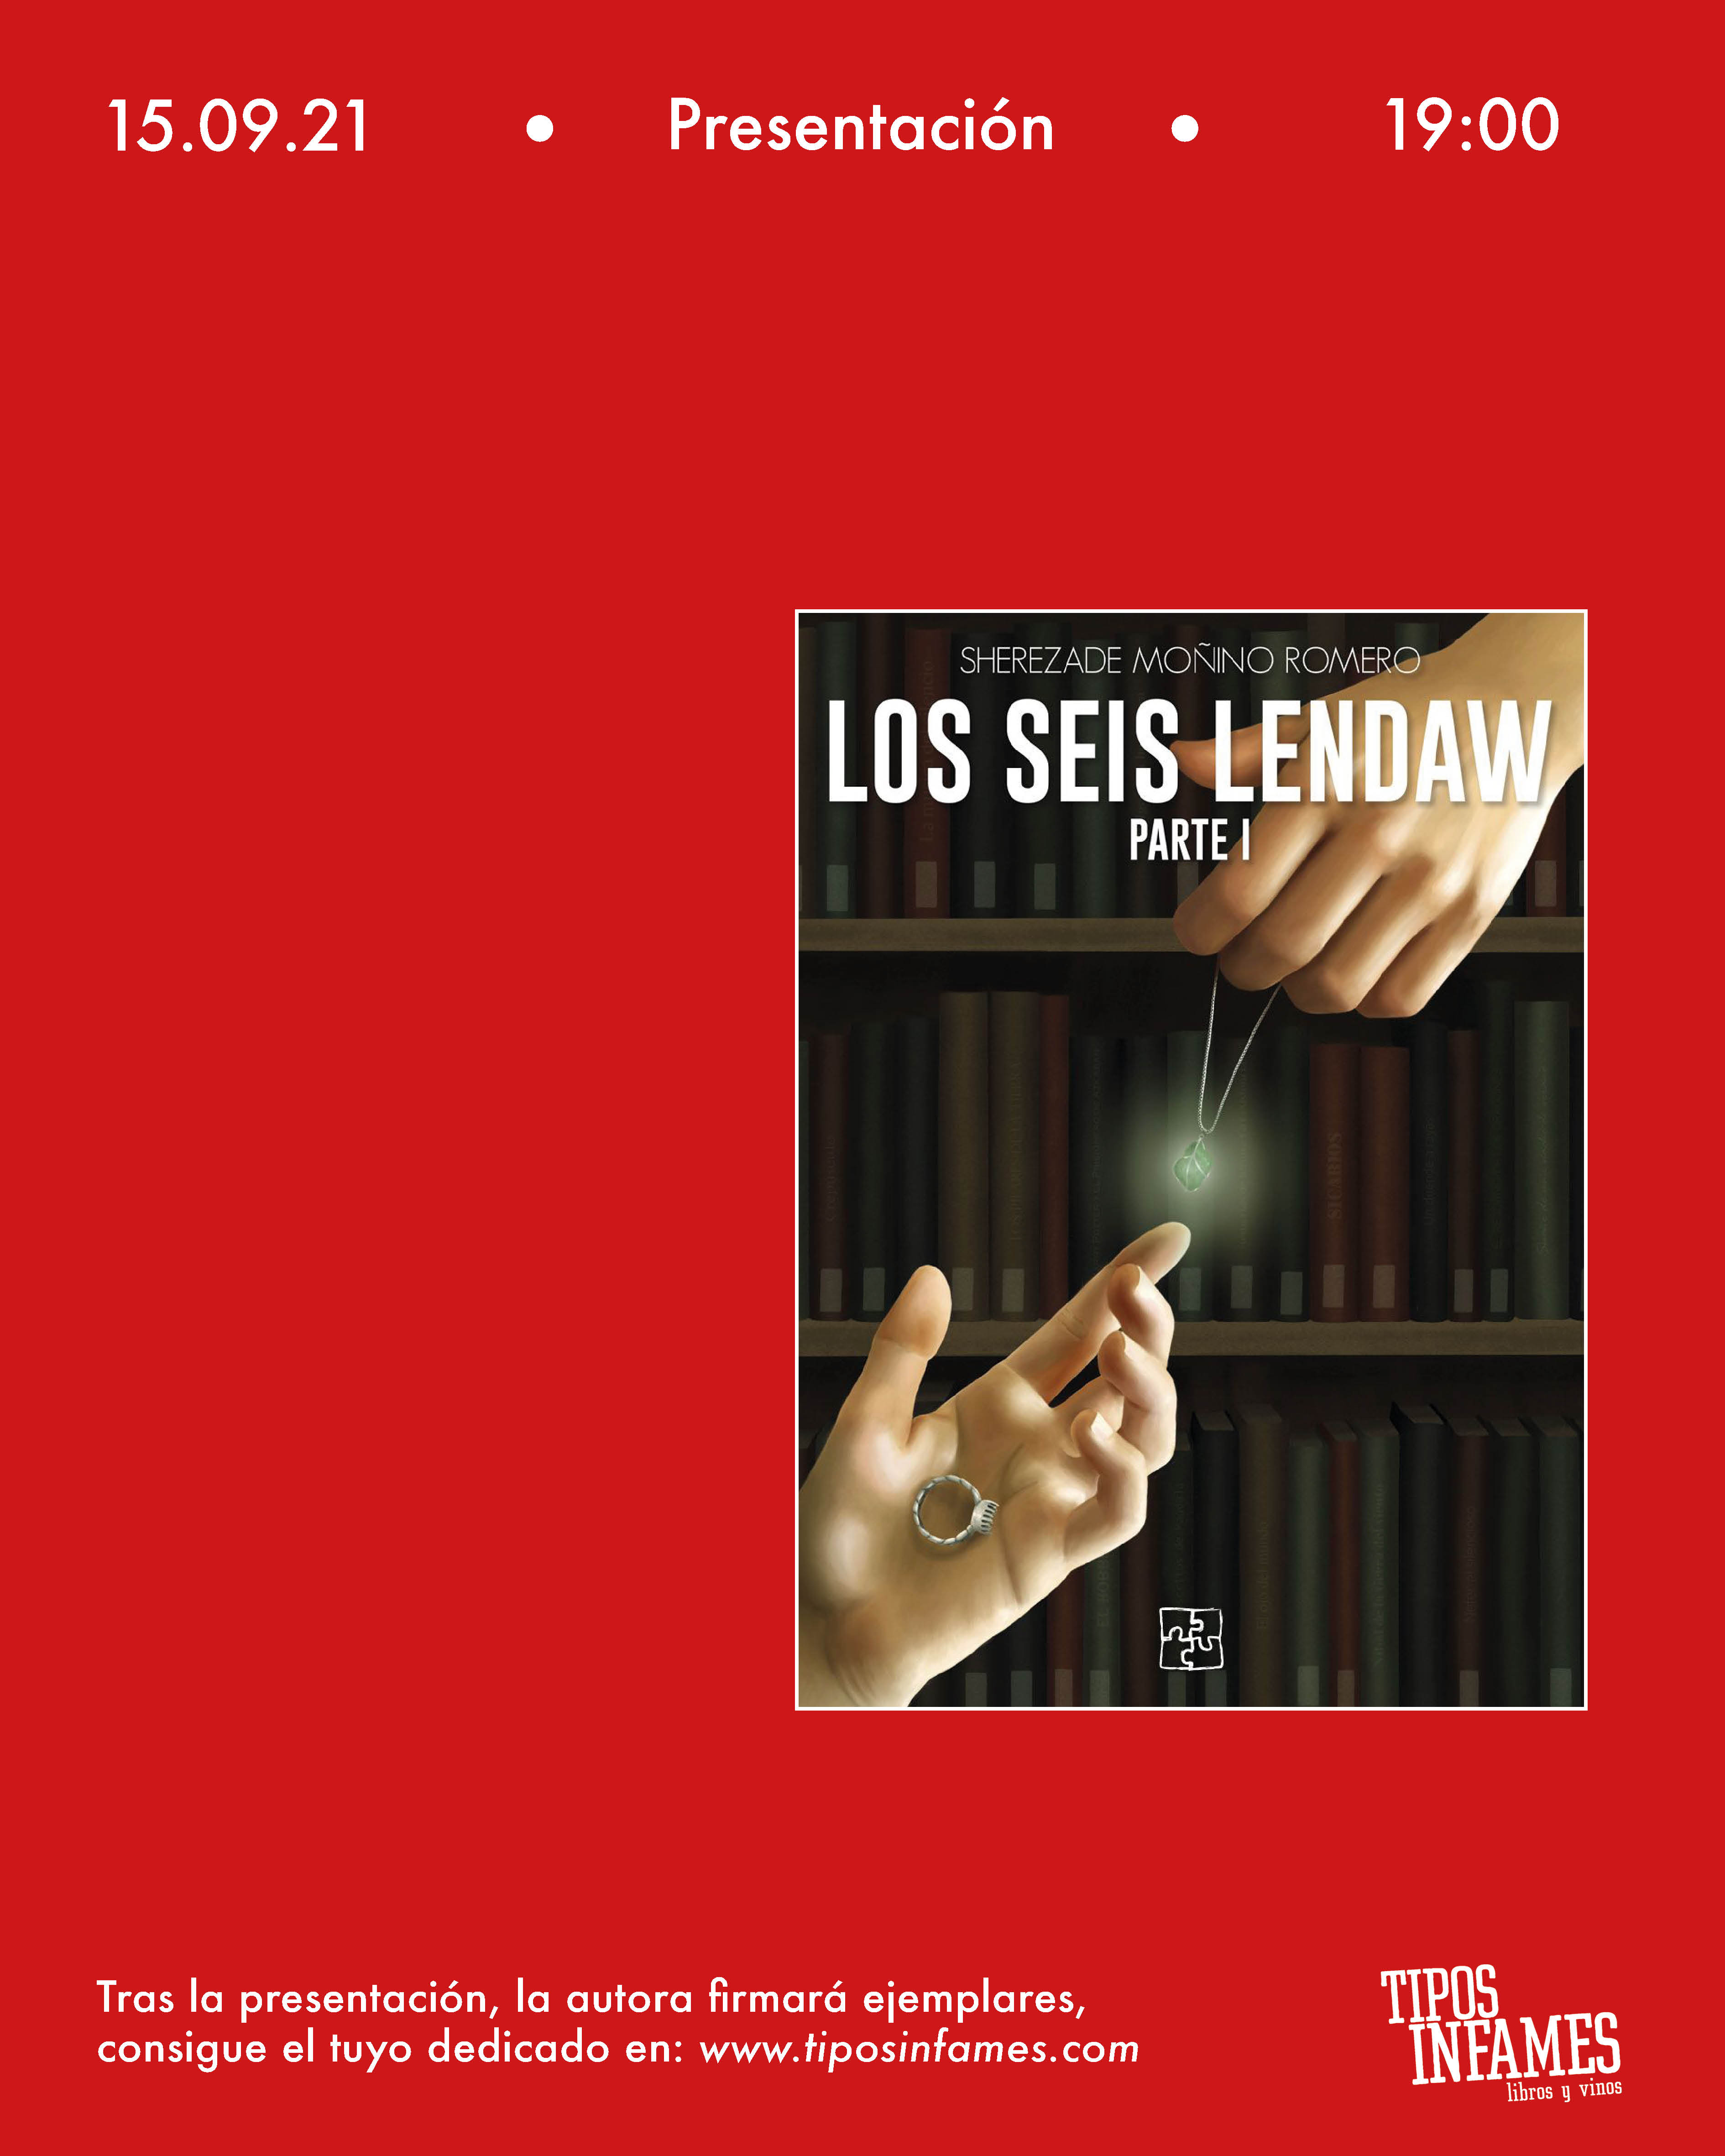 Los seis Lendaw, de Sherezade Moñino